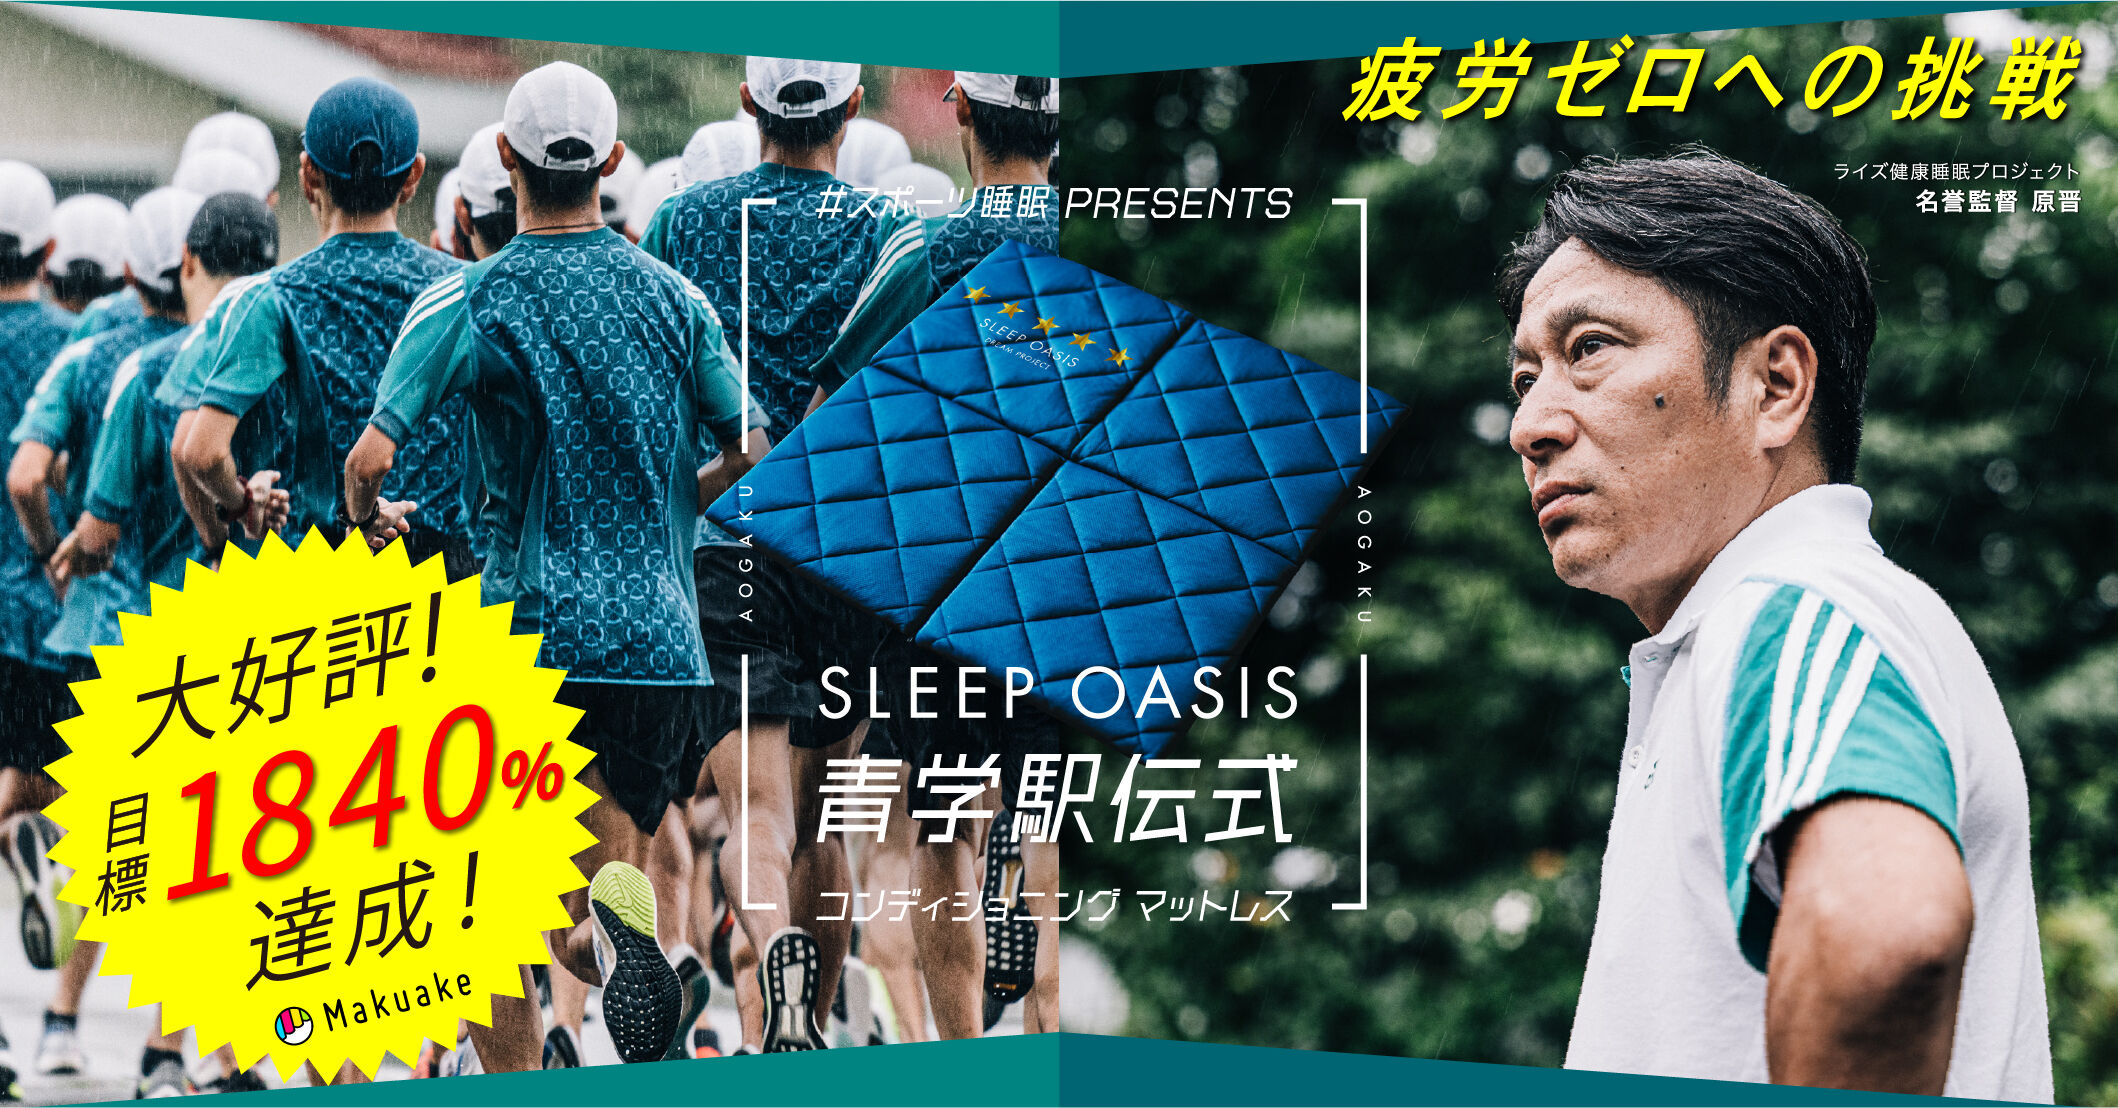 #スポーツ睡眠 PRESENTS SLEEP OASIS 青学駅伝式 コンディショニング マットレス 疲労ゼロへの挑戦